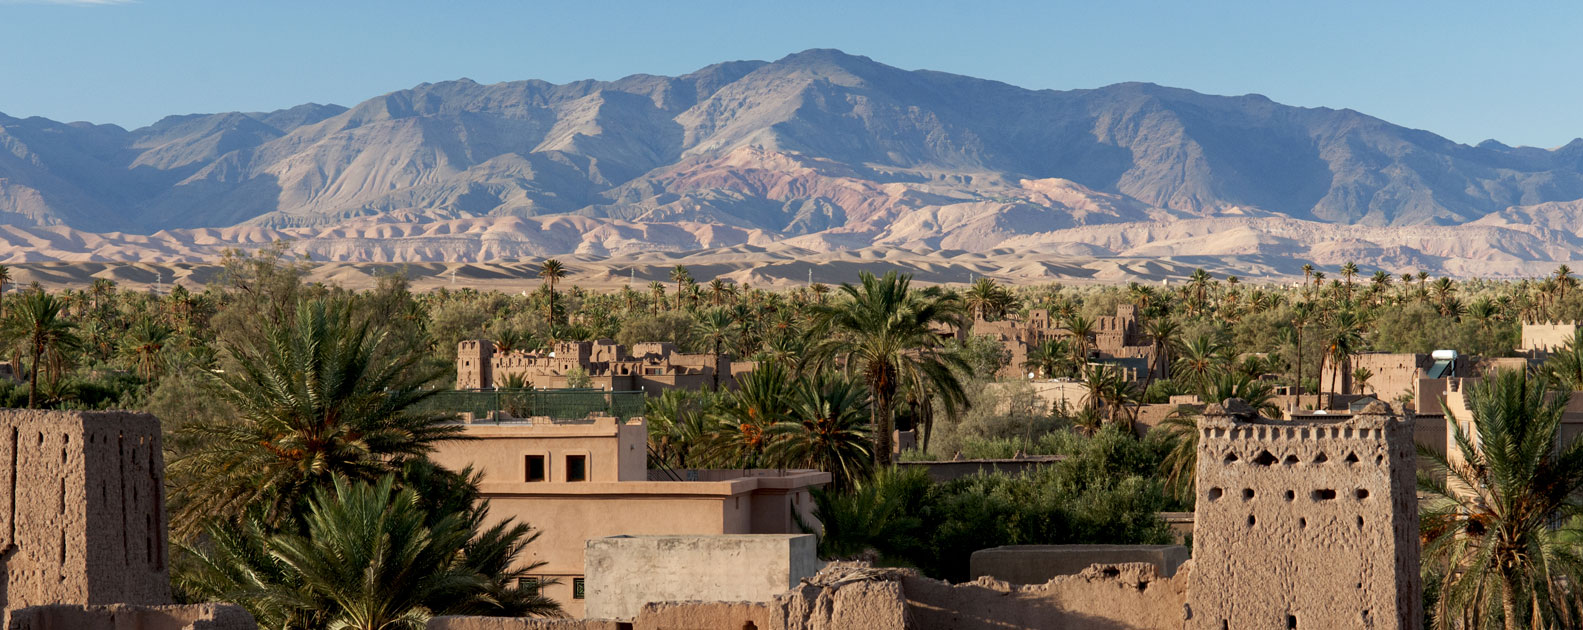 Ouarzazate-Zagora-Tinghir, Eine Filmkulisse, die man gesehen haben muss